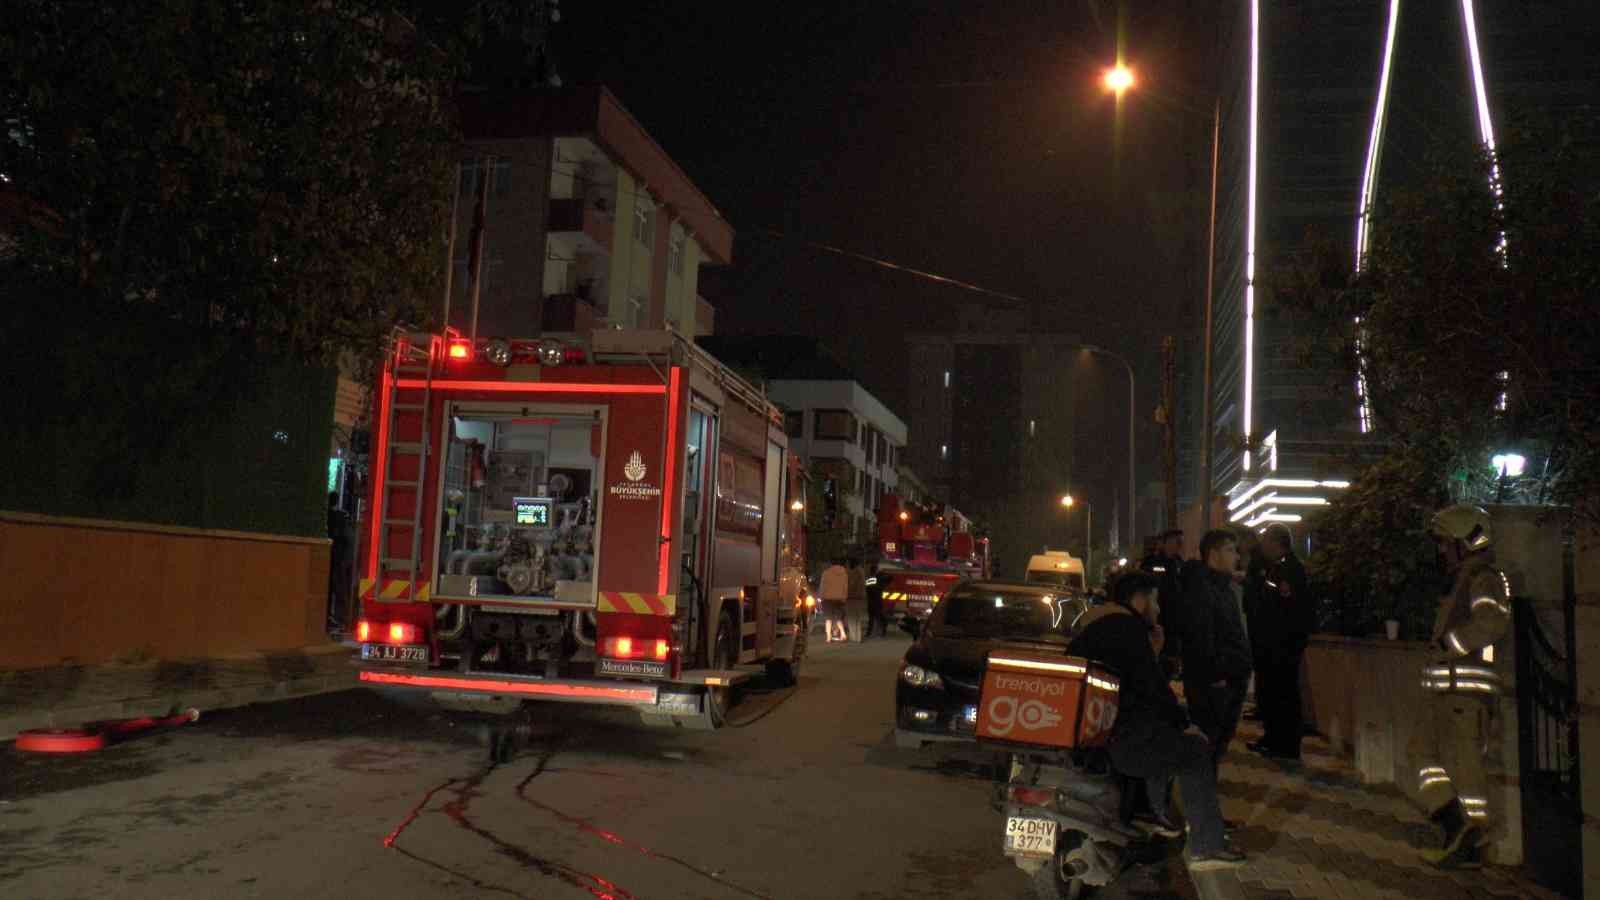 Ataşehir’de 5 katlı özel yurtta yangın çıktı, öğrenciler sokağa döküldü #istanbul